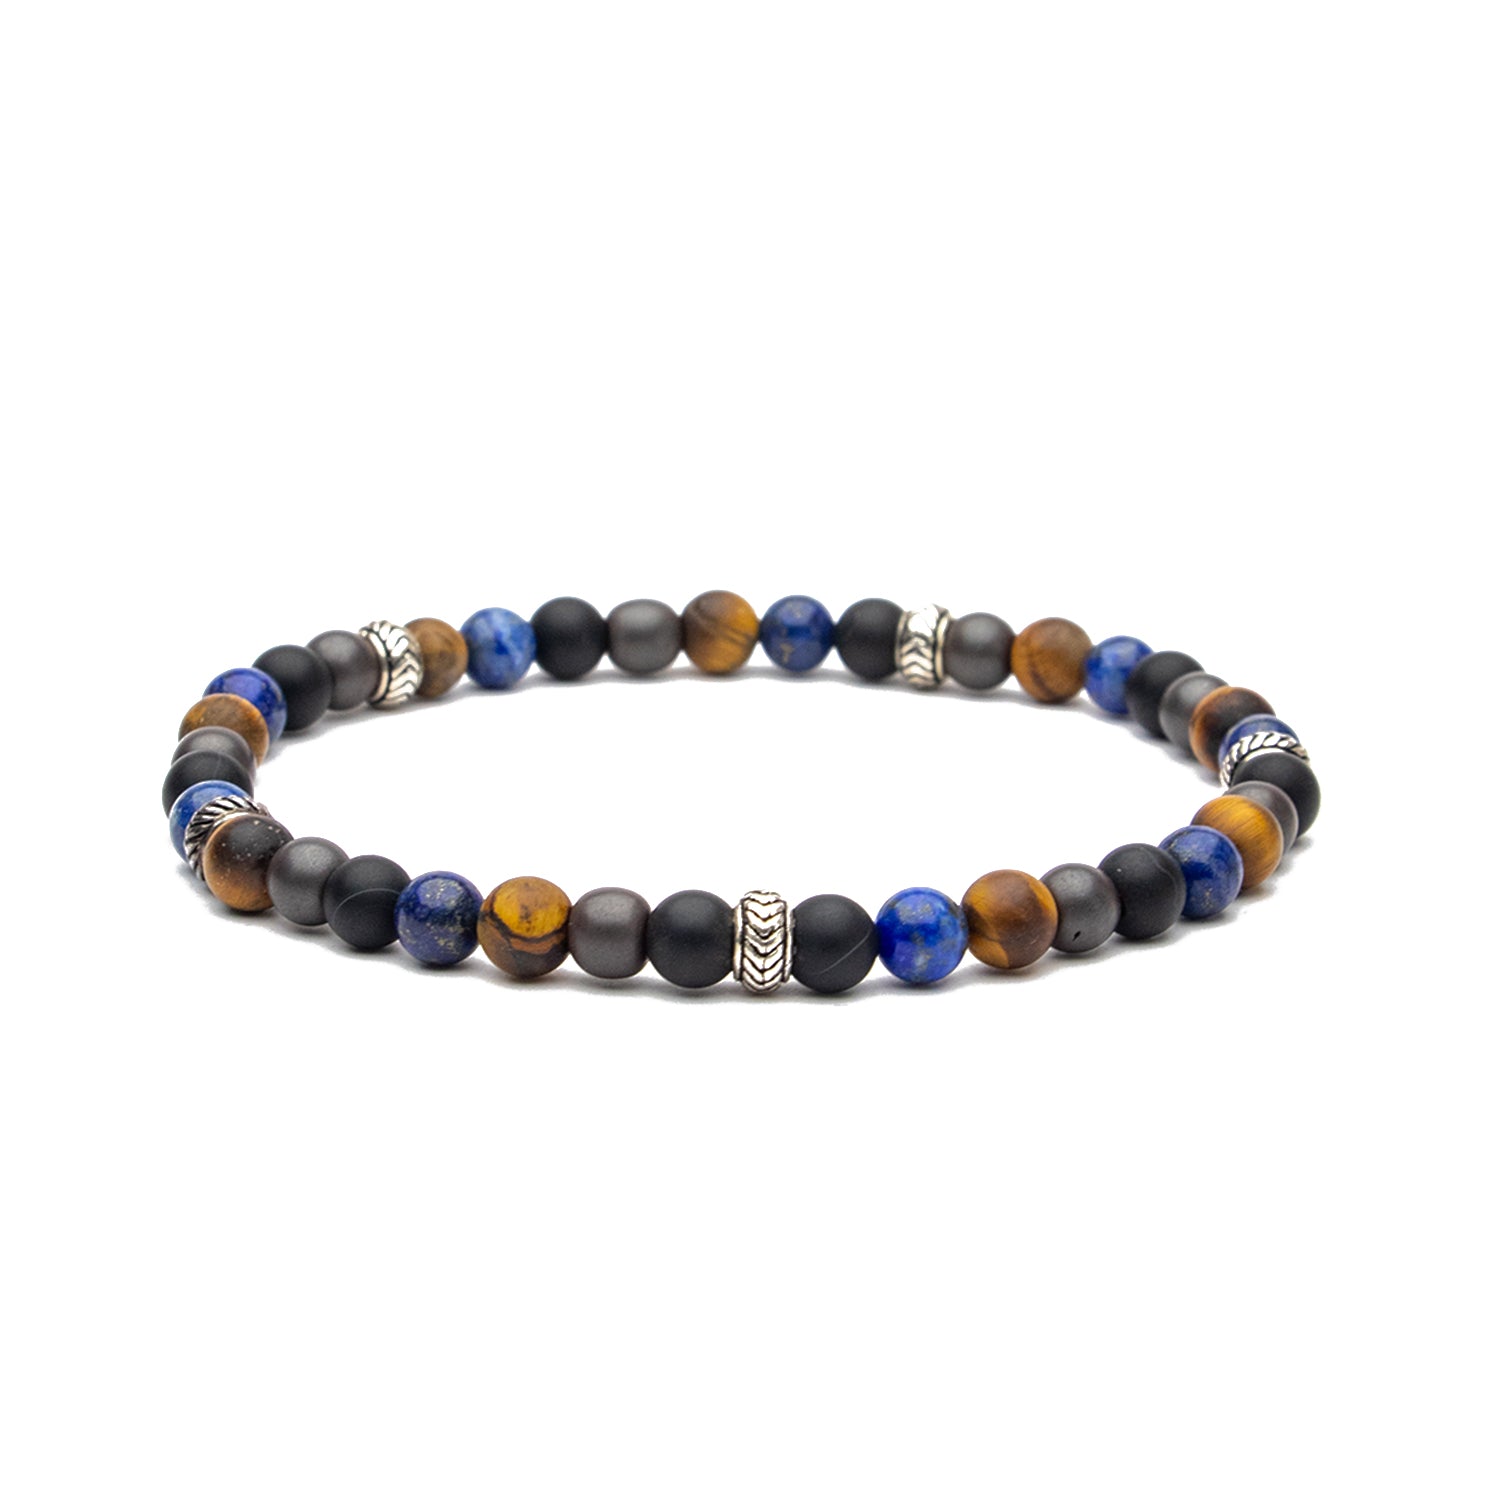 Chevron Stopper Bracelet in Tiger Eye, Hematite, Onyx and Hematite Gemstone Beads